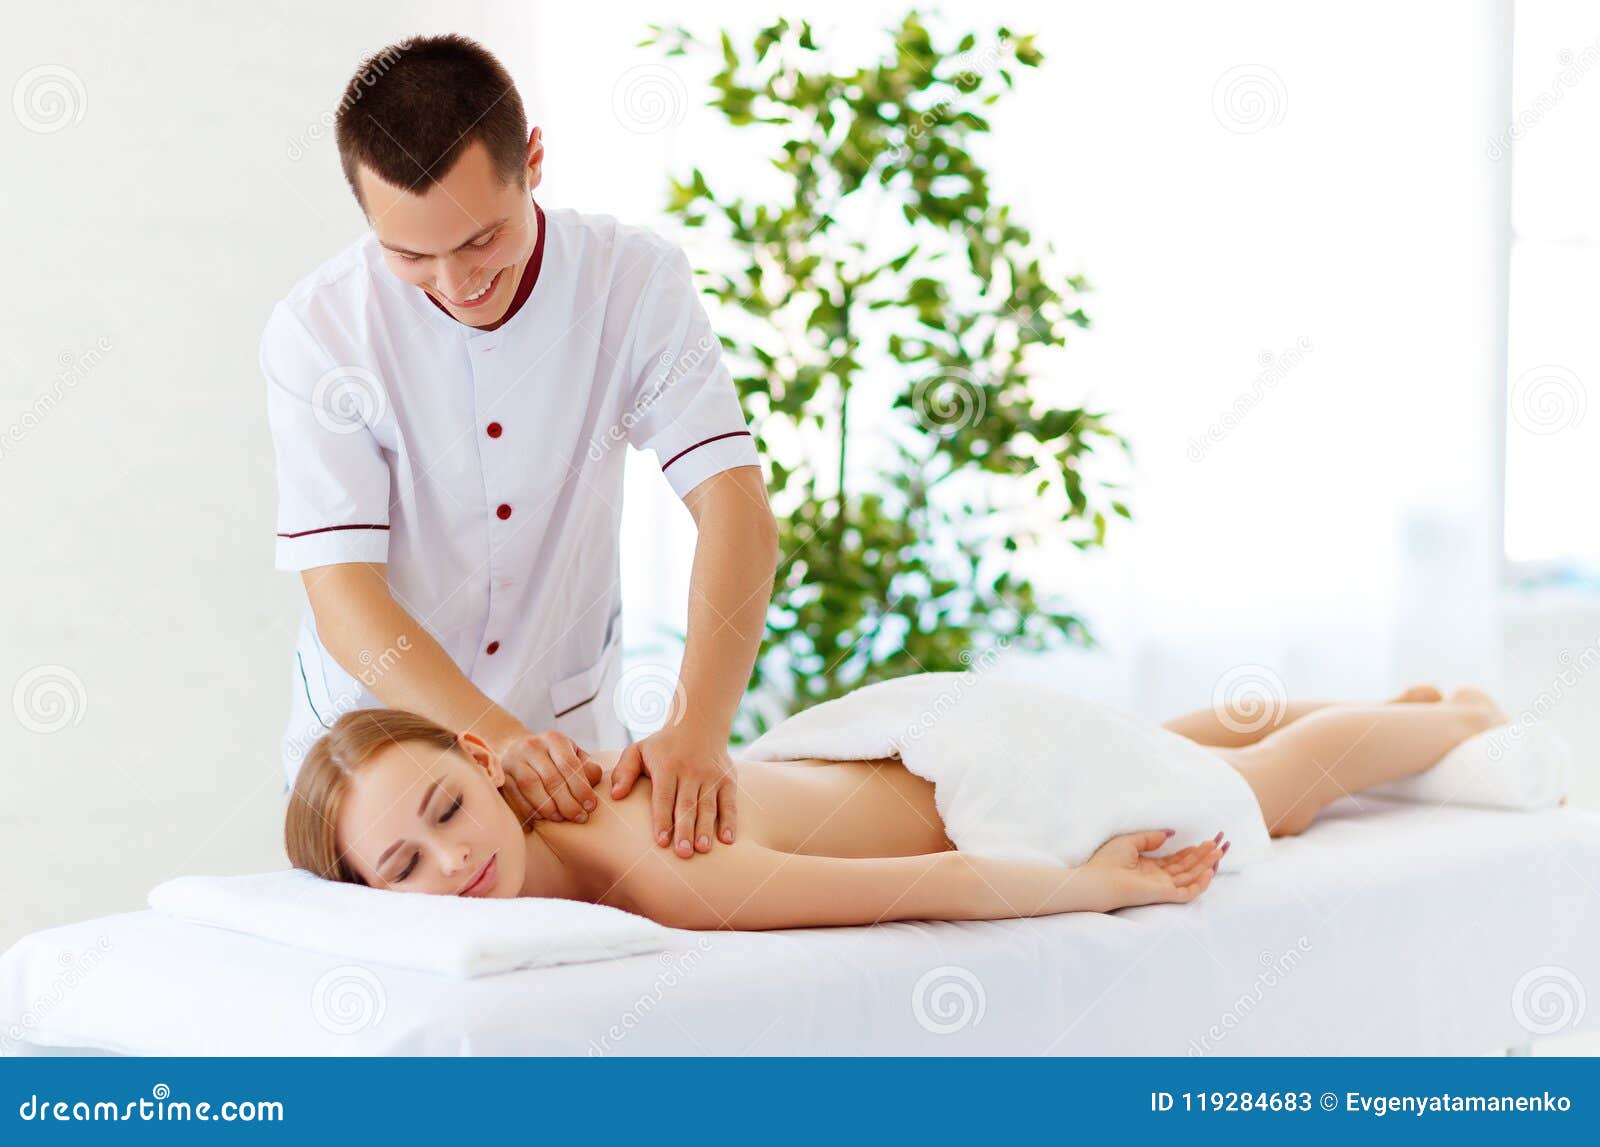 on girl massage Asian girl oil